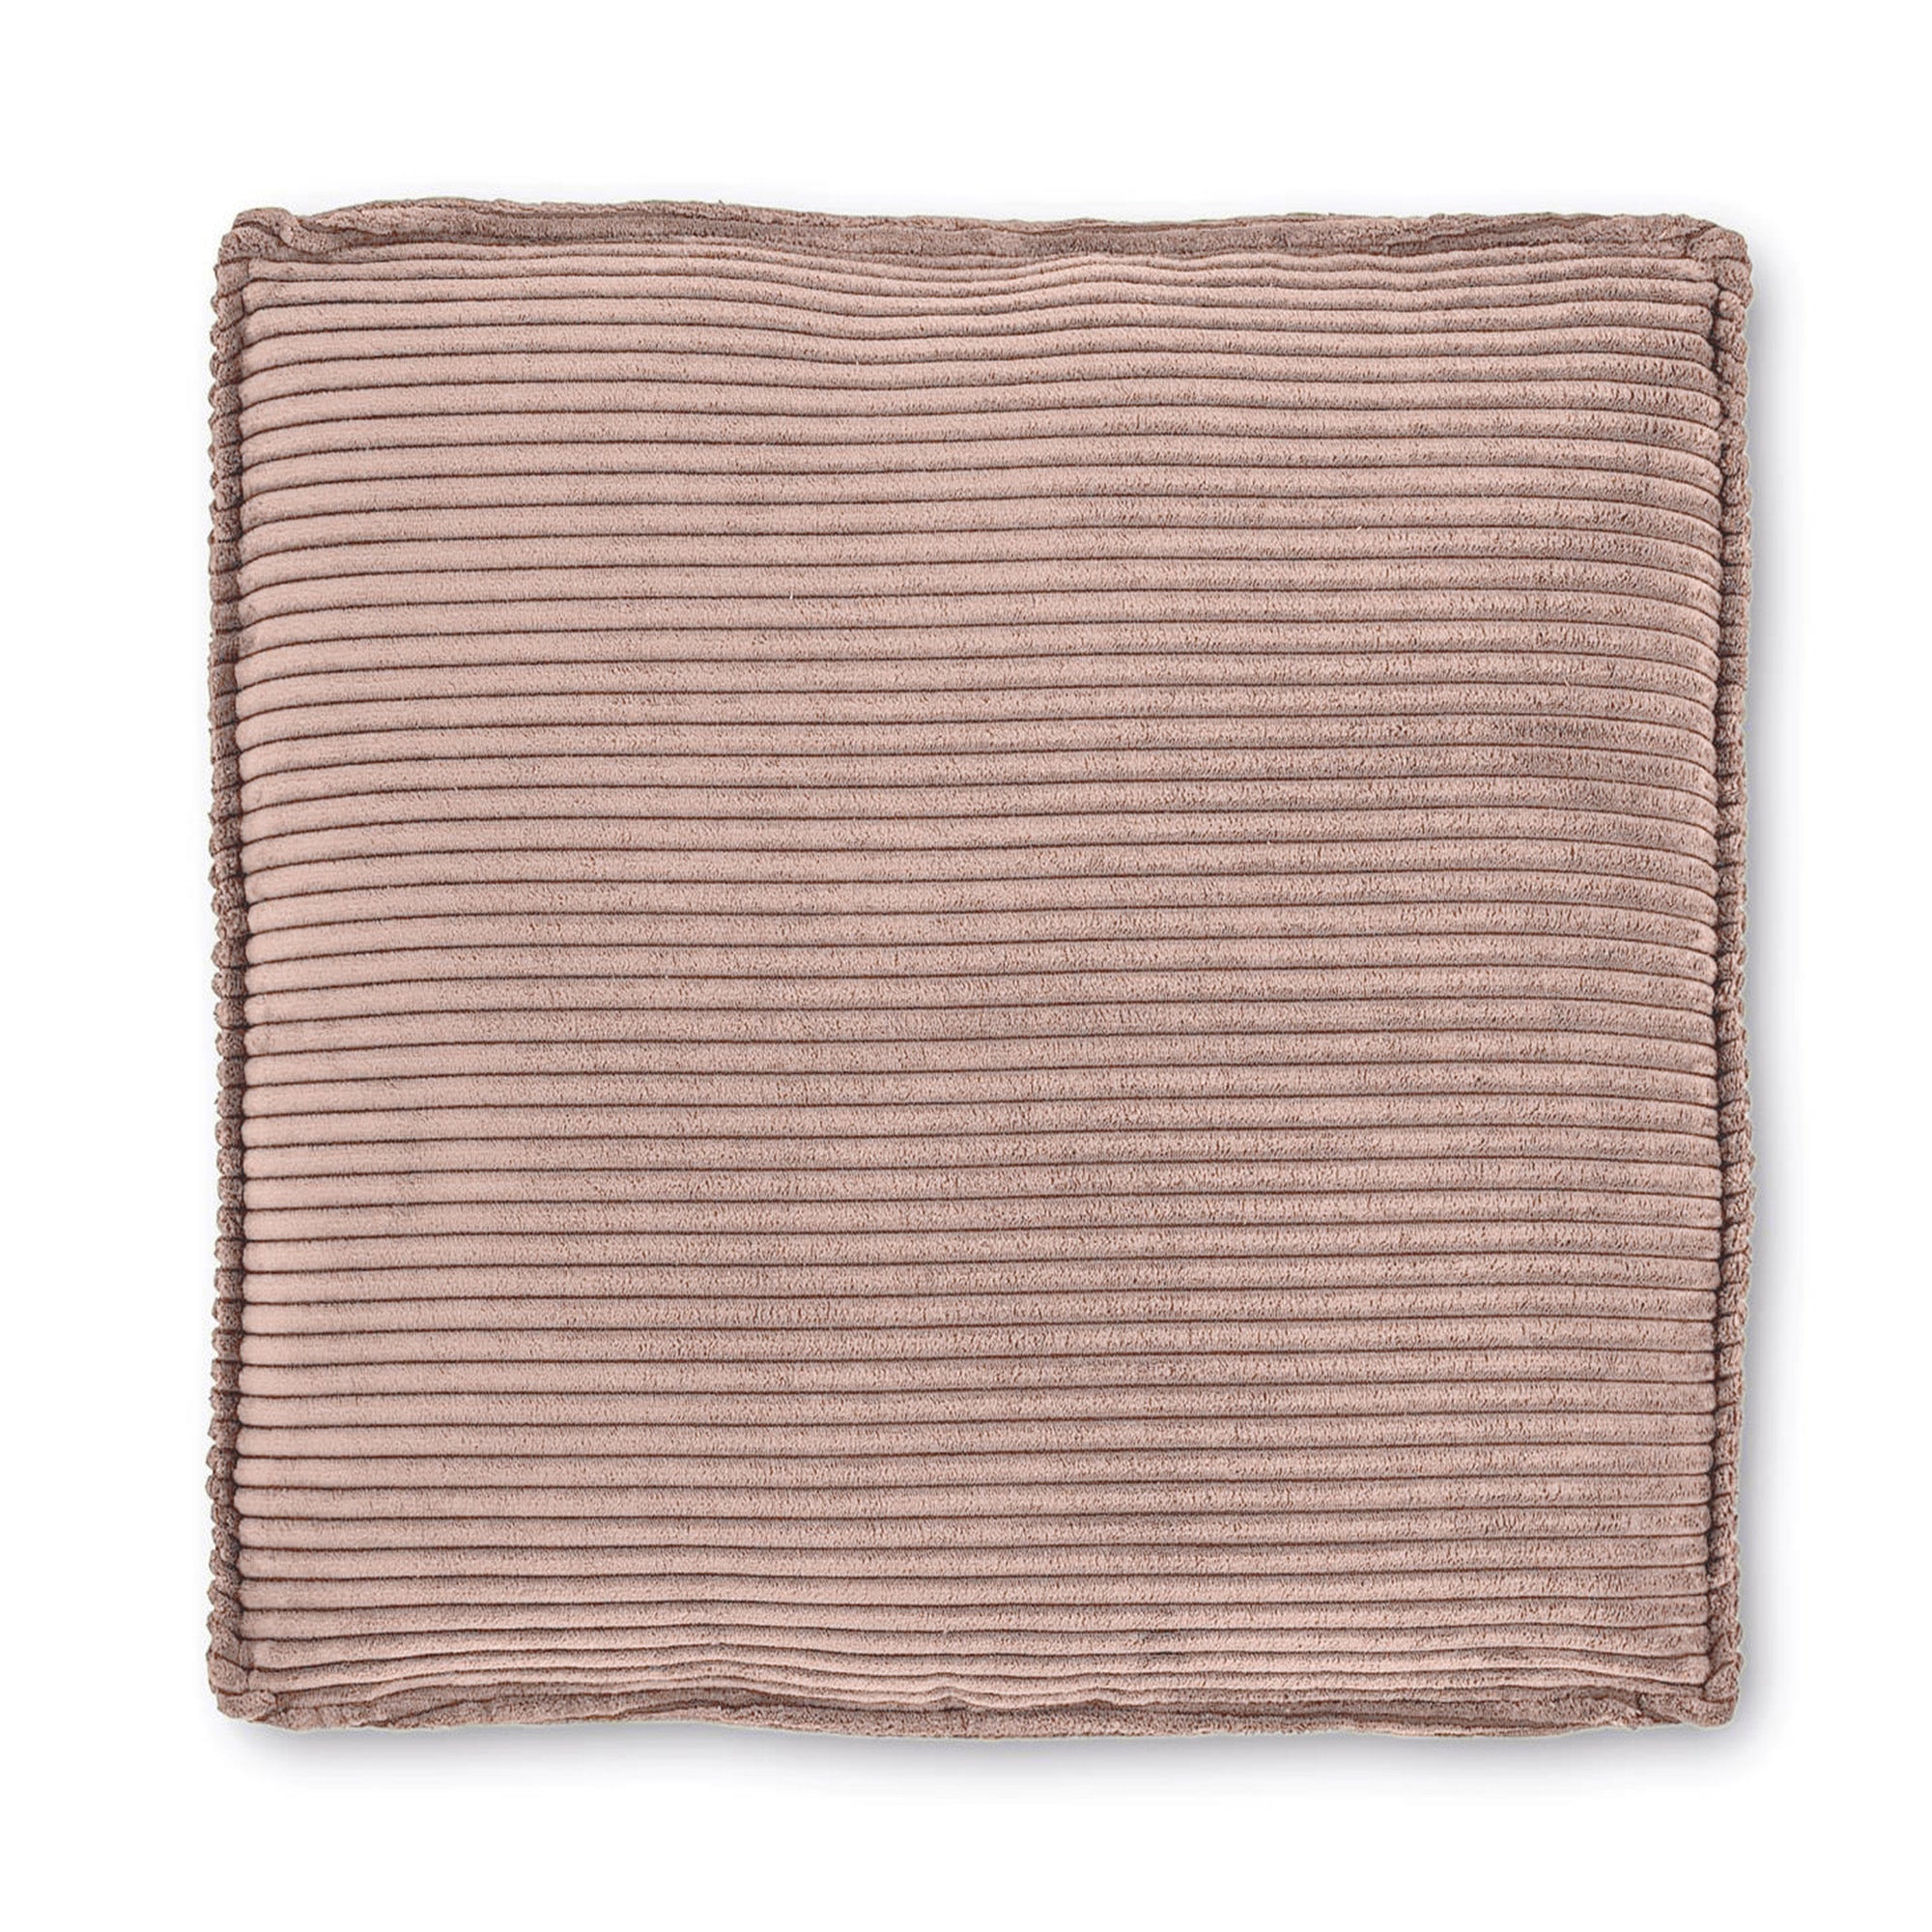 Blok párna rózsaszín, széles varrású kordbársonyból, 60 x 60 cm